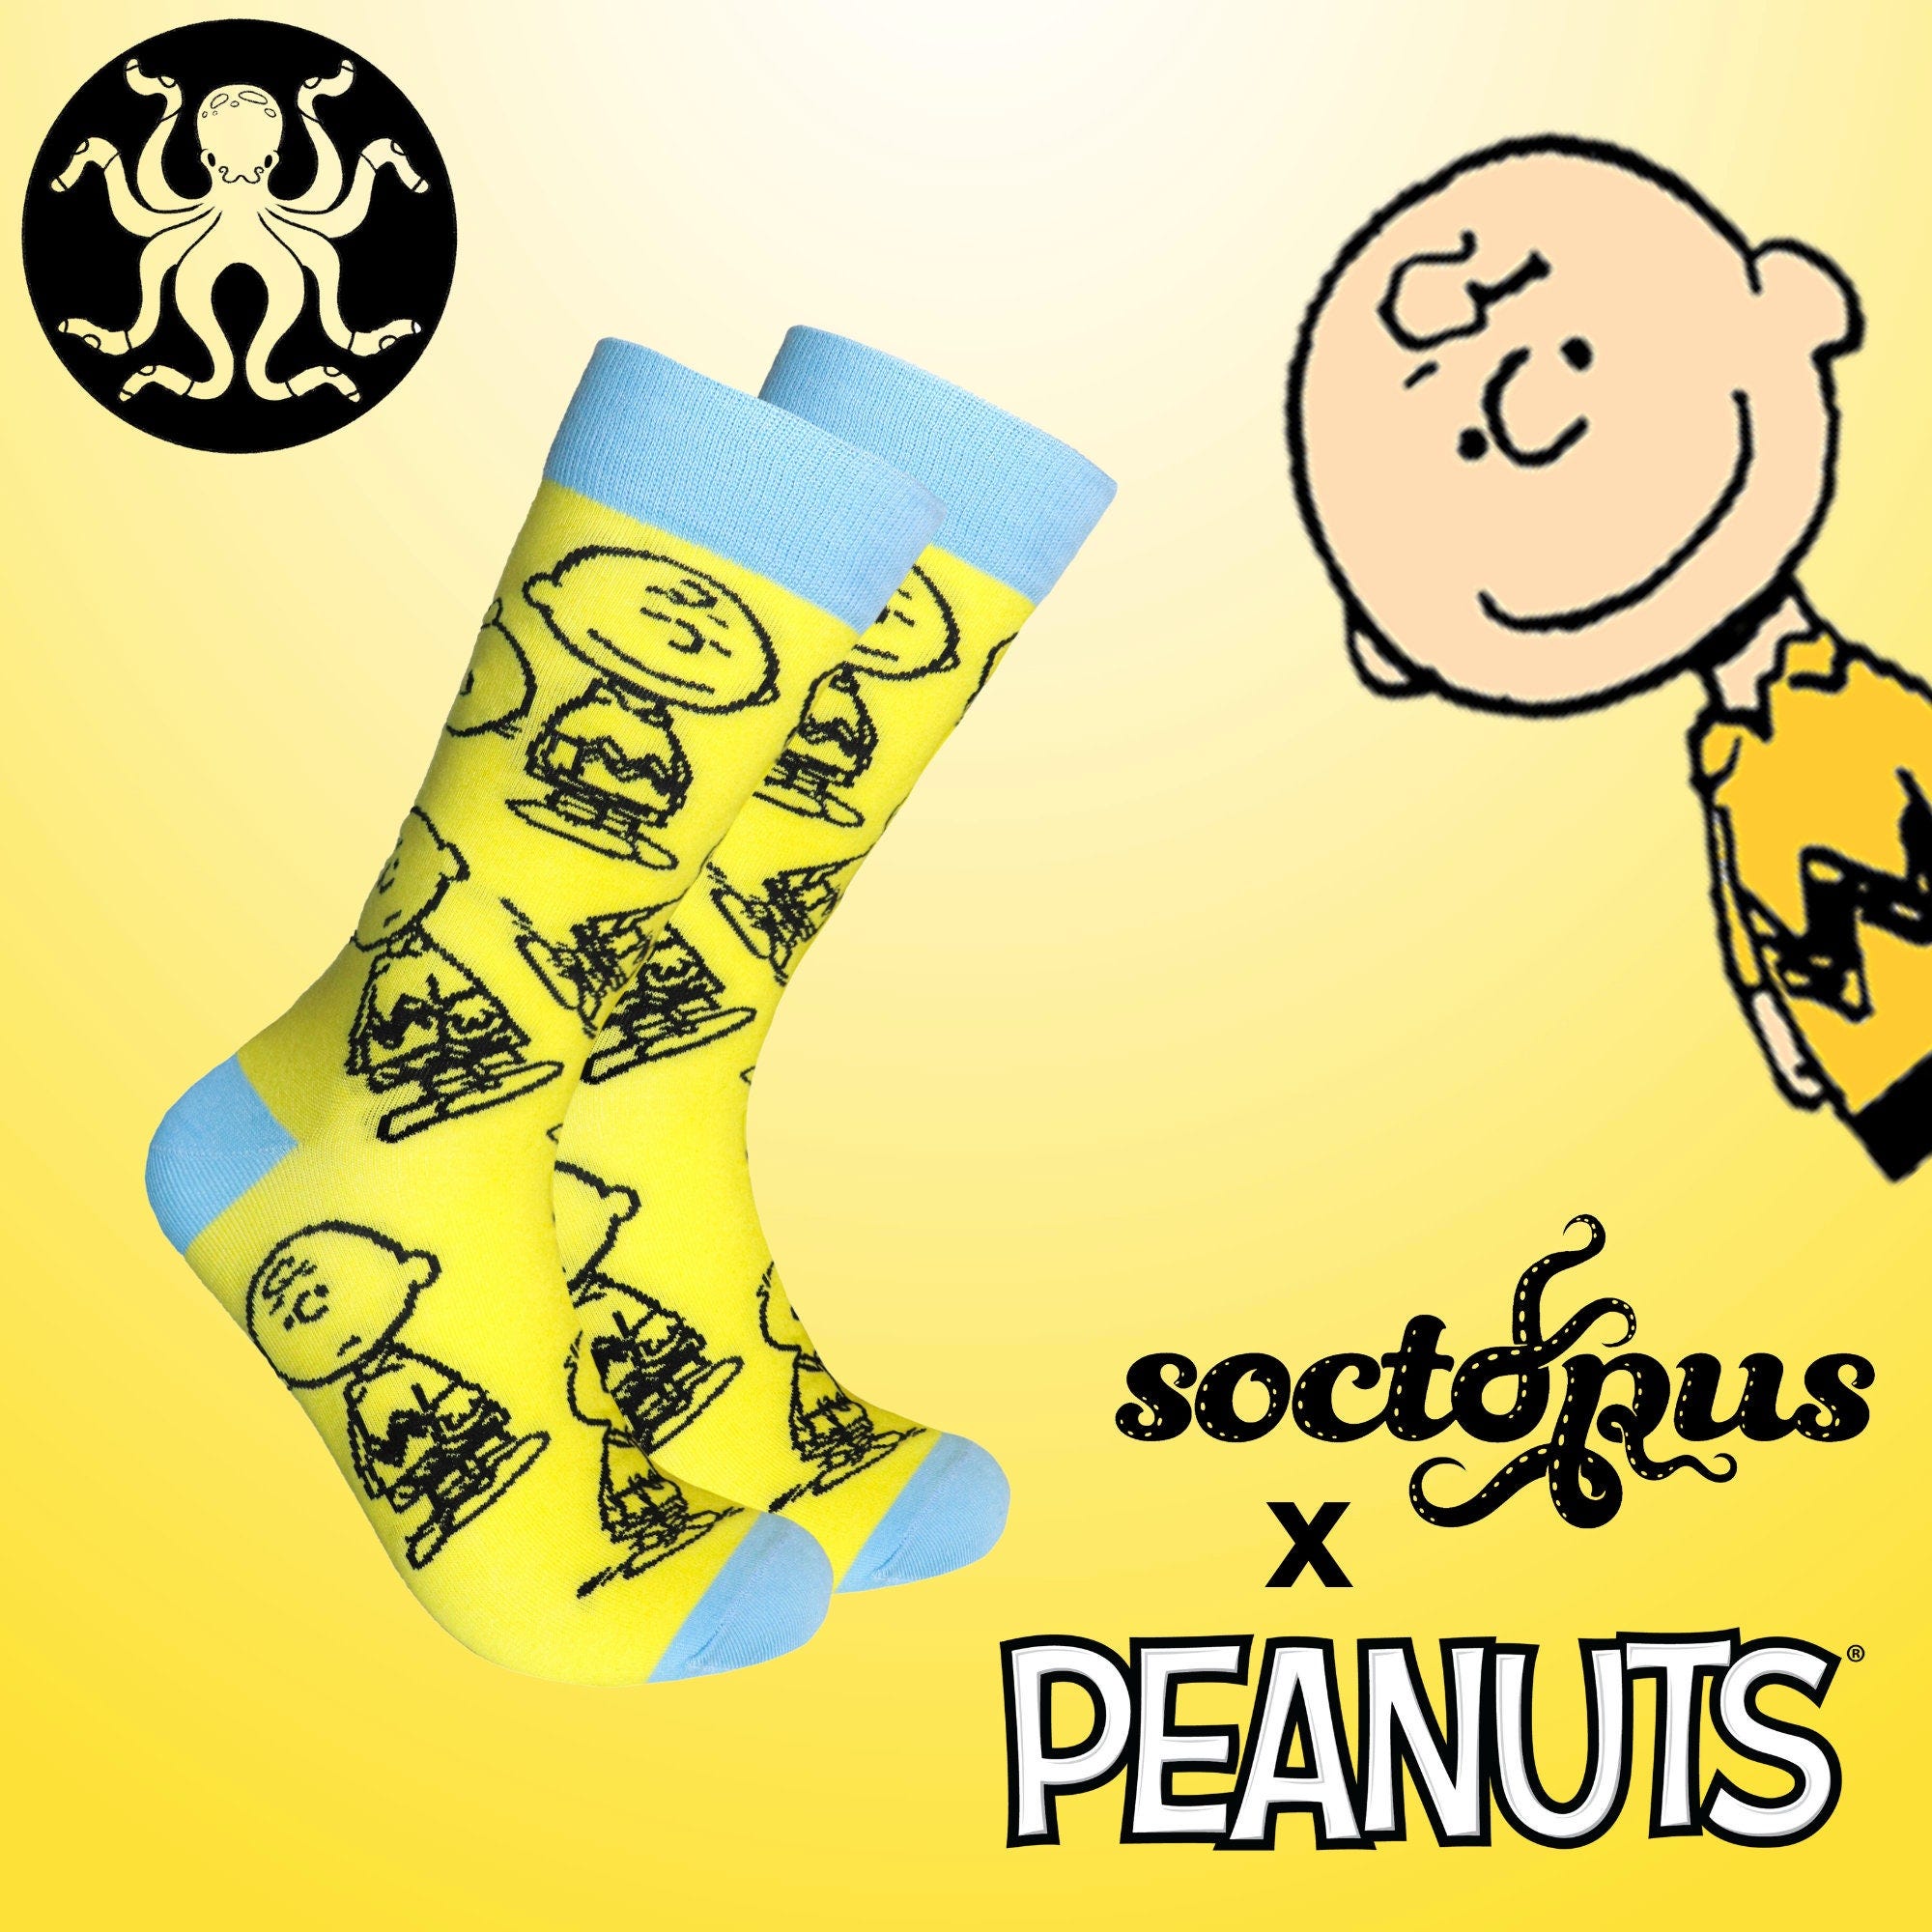 Charlie Brown Socks - Peanuts Socks - Snoopy - Novelty socks - Unisex Socks - Socks Gifts - Socks for Men - Socks for Women